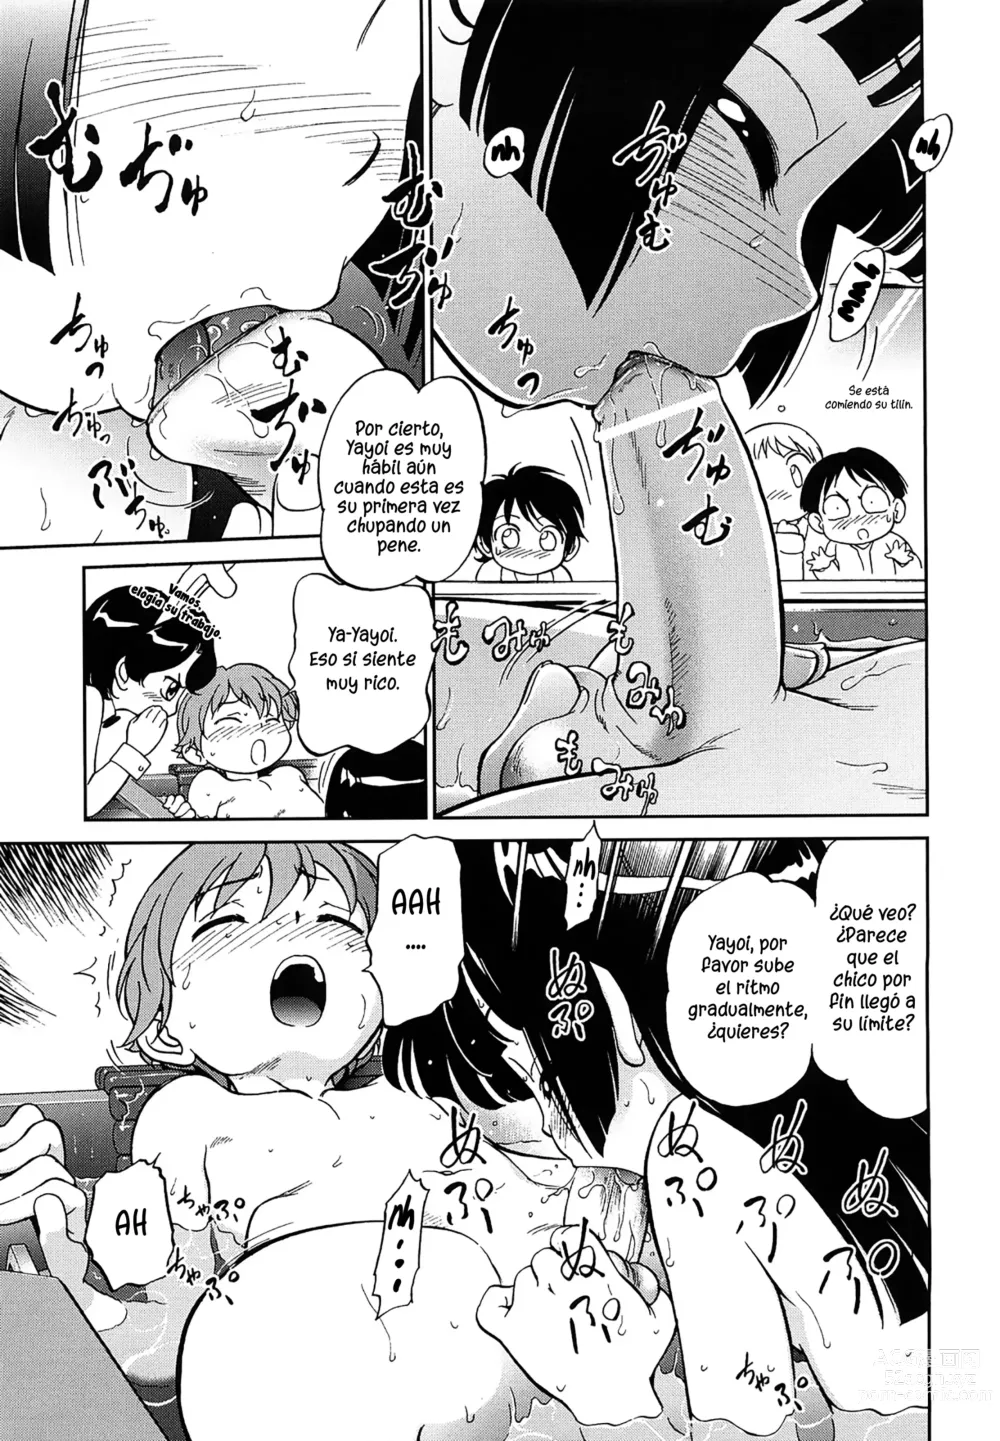 Page 9 of manga Niños trabajando